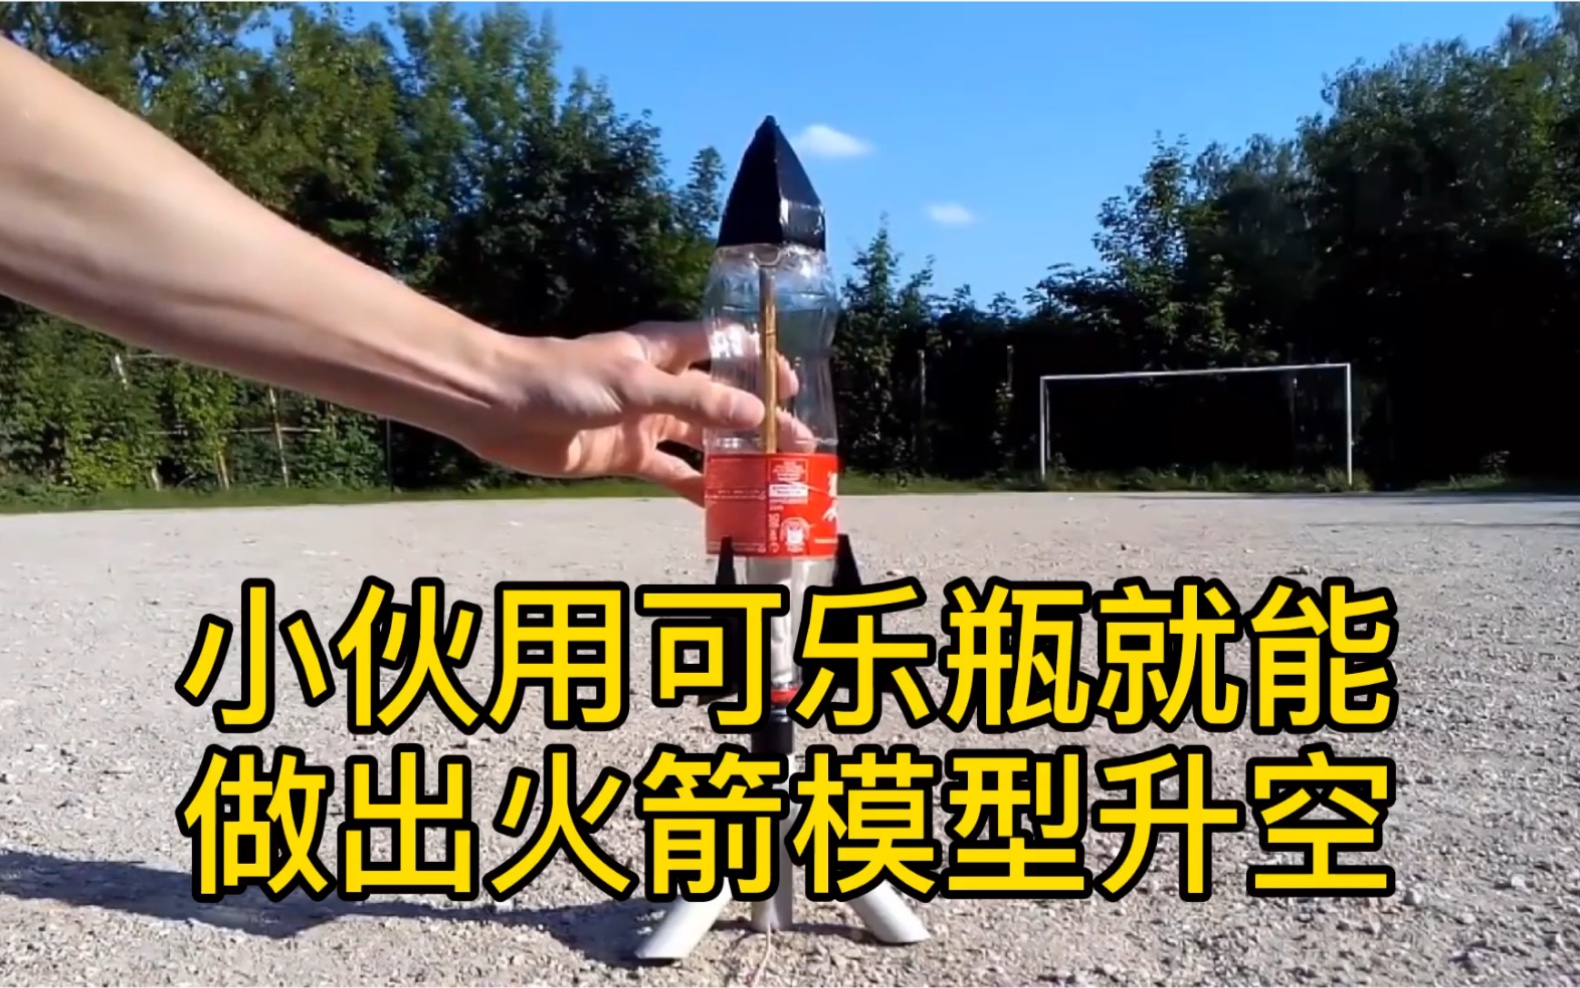 用可乐瓶制作火箭模型，前一秒无聊，后一秒直接傻眼